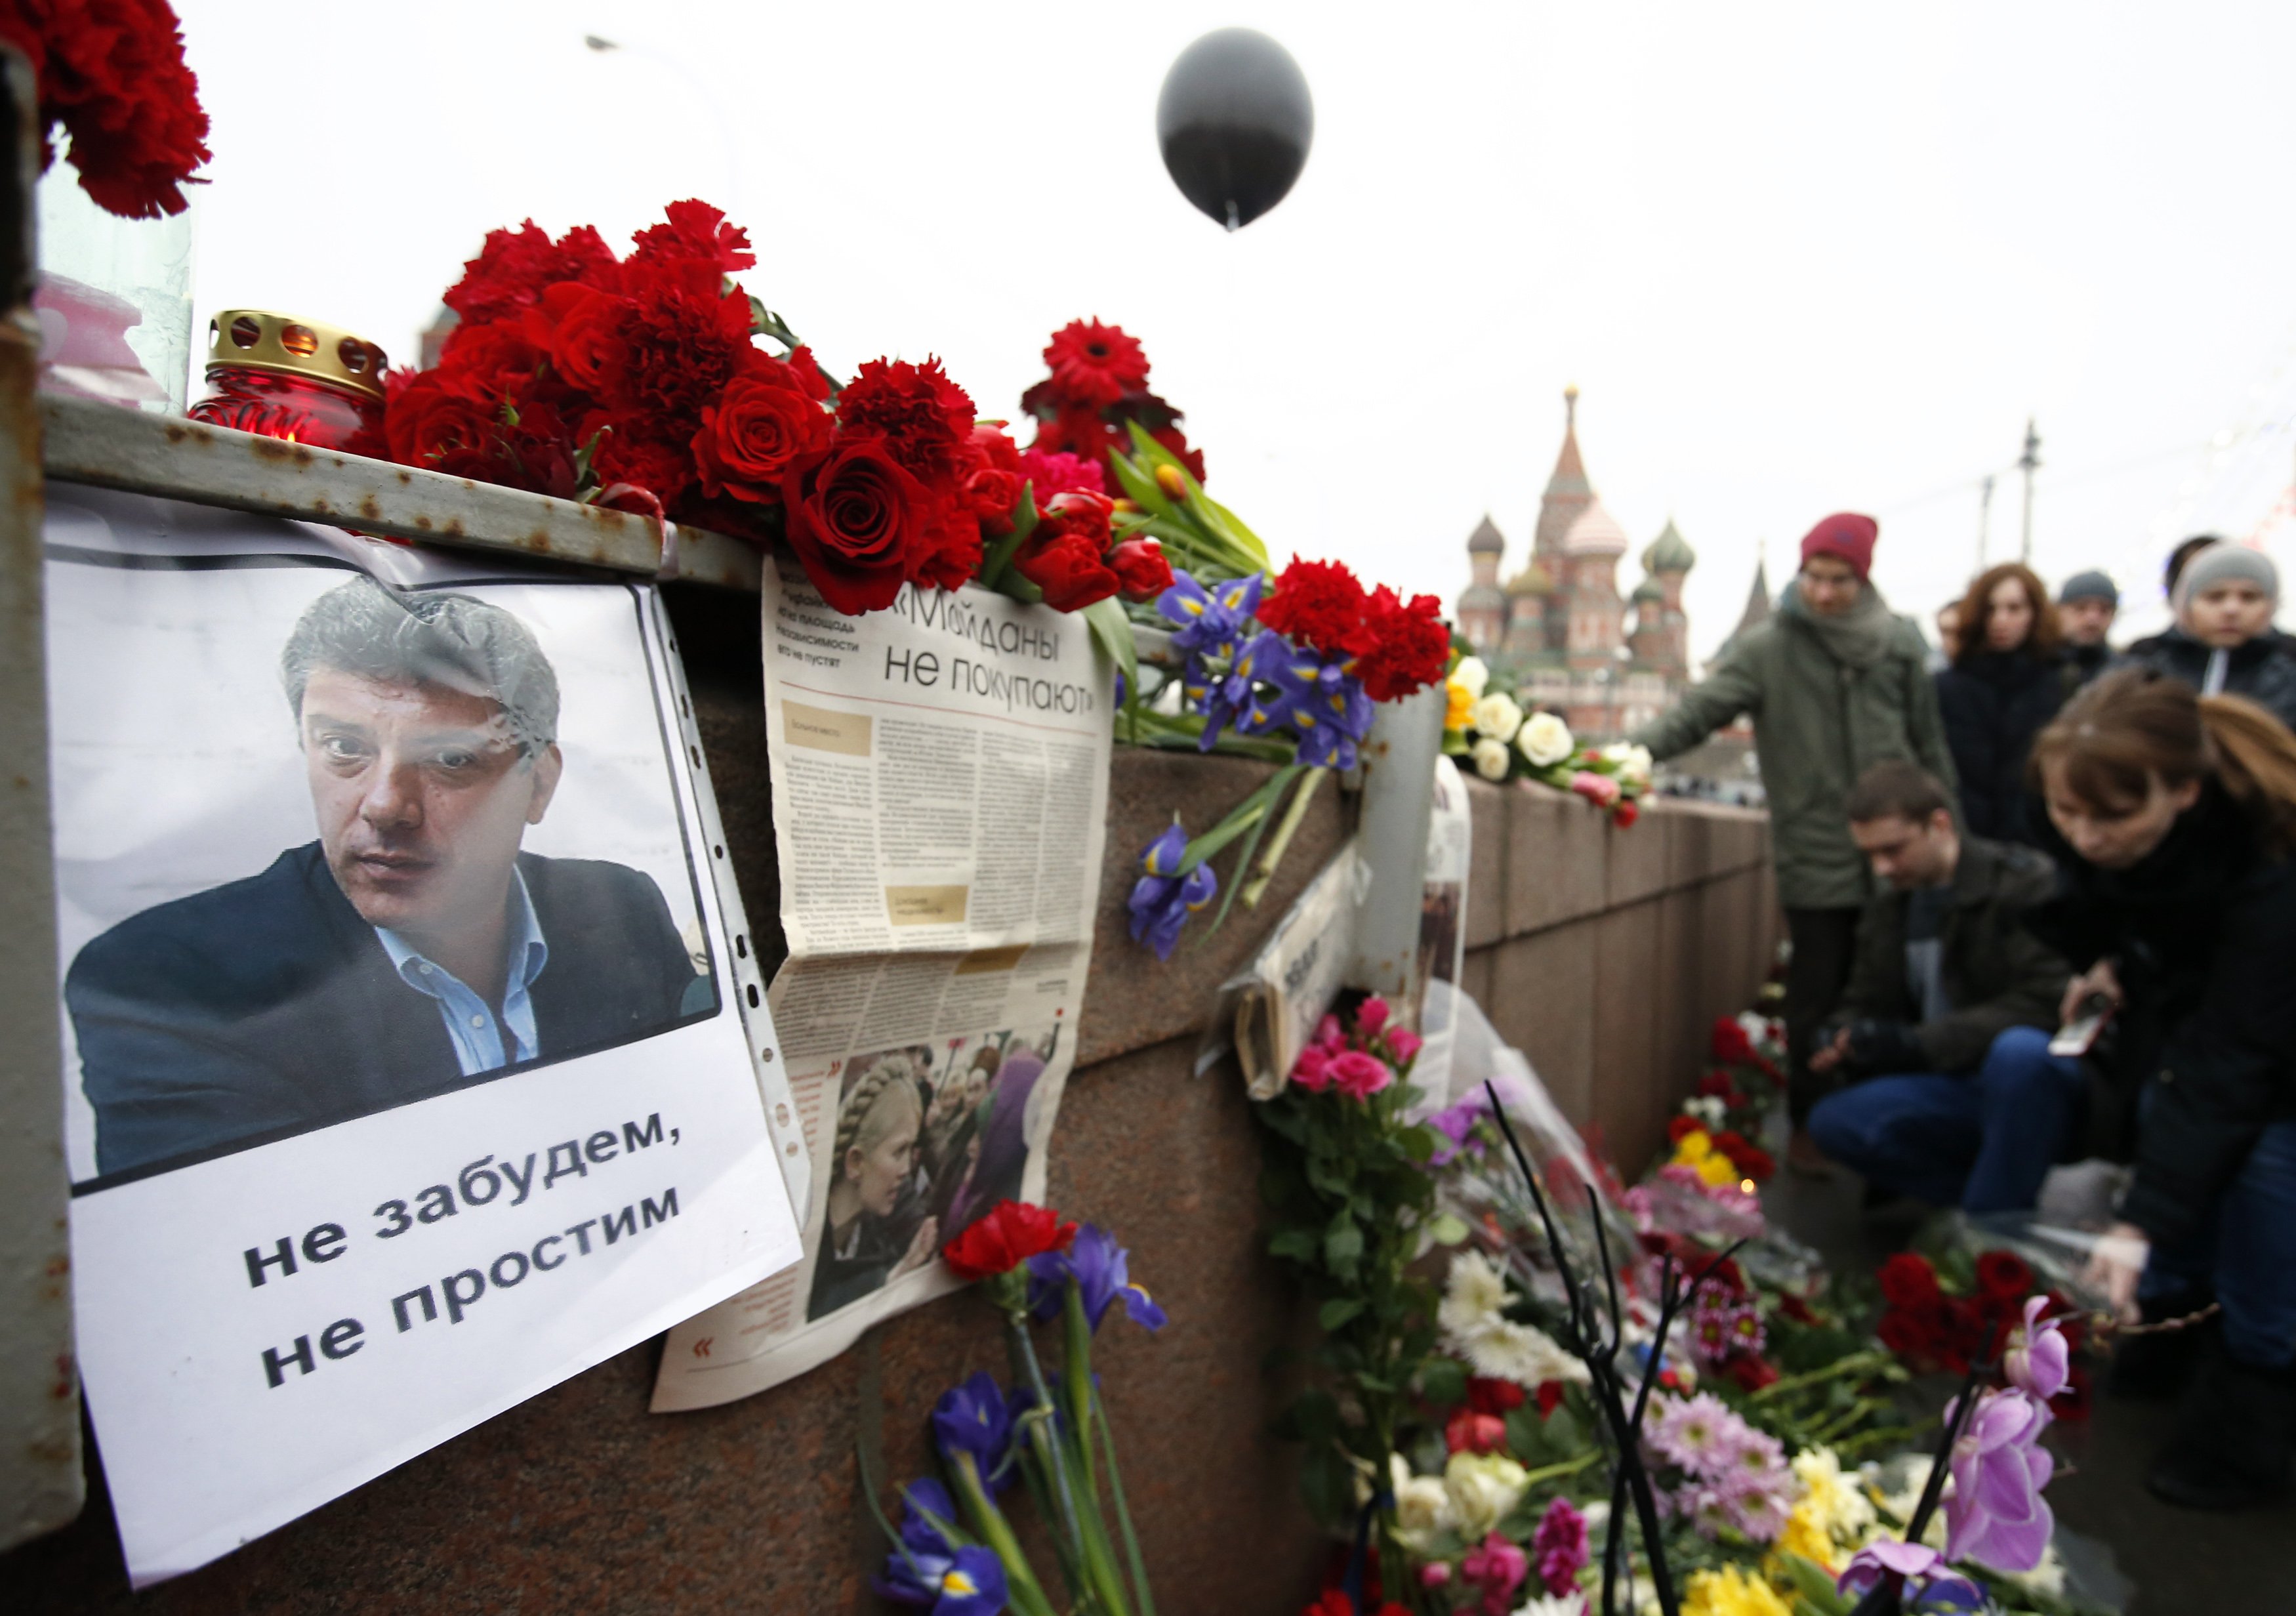 Руски политик вещае вълна от престъпления след смъртта на Немцов